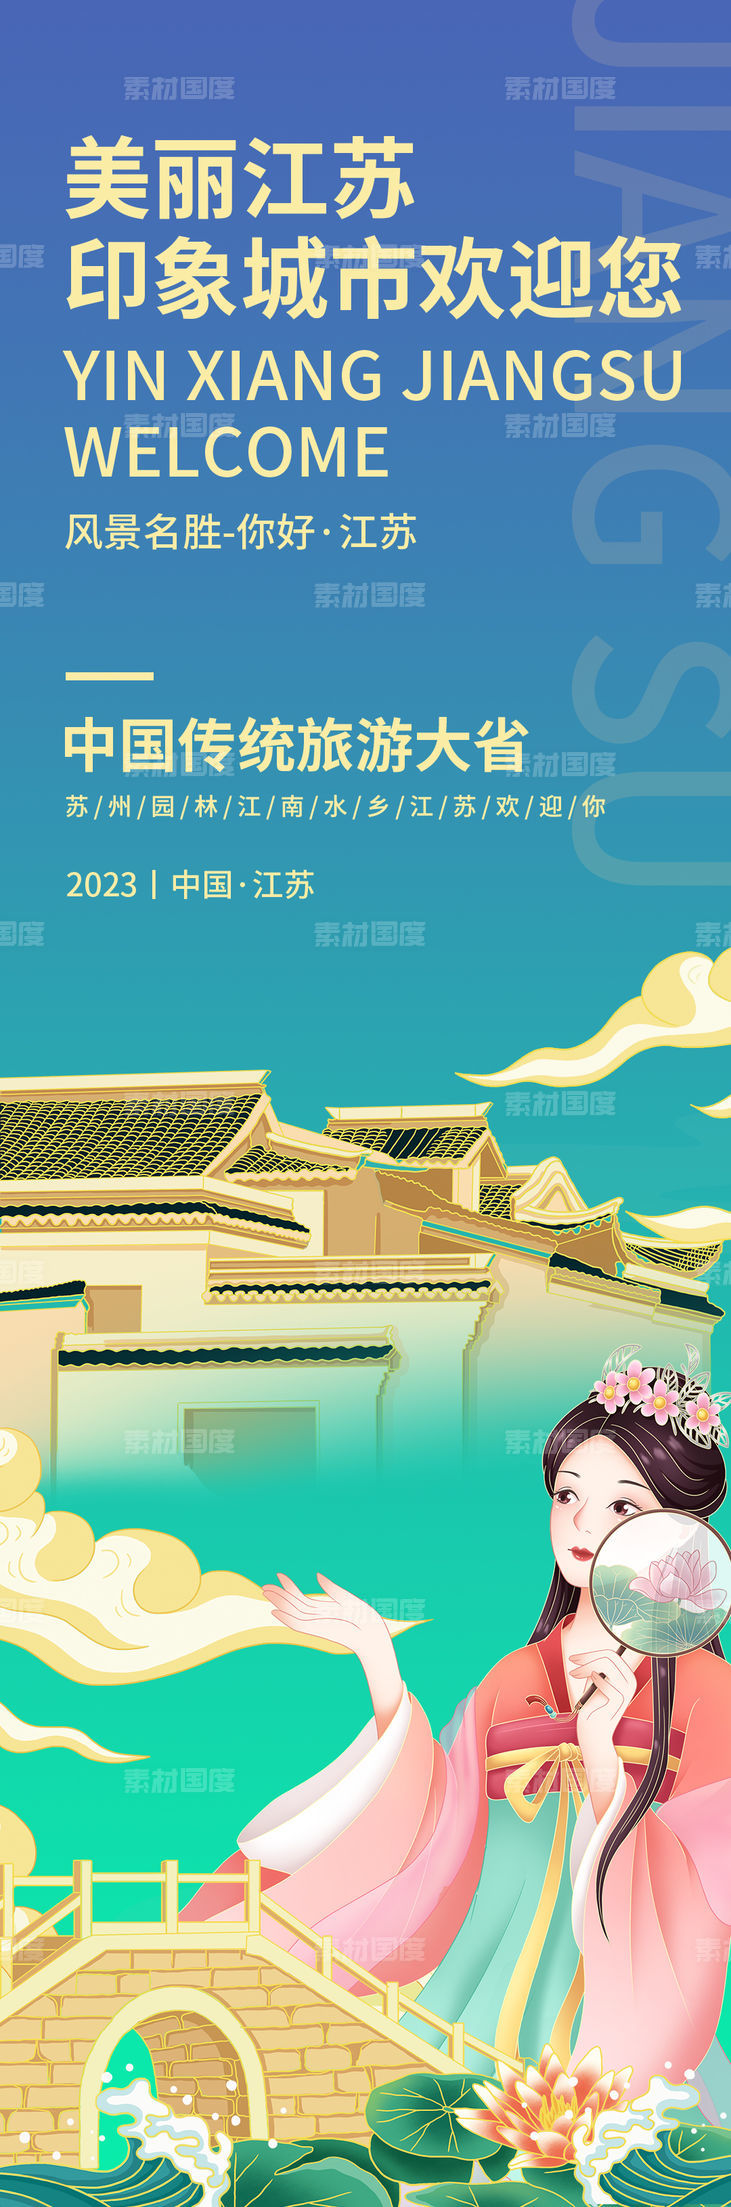 美丽江苏旅游海报